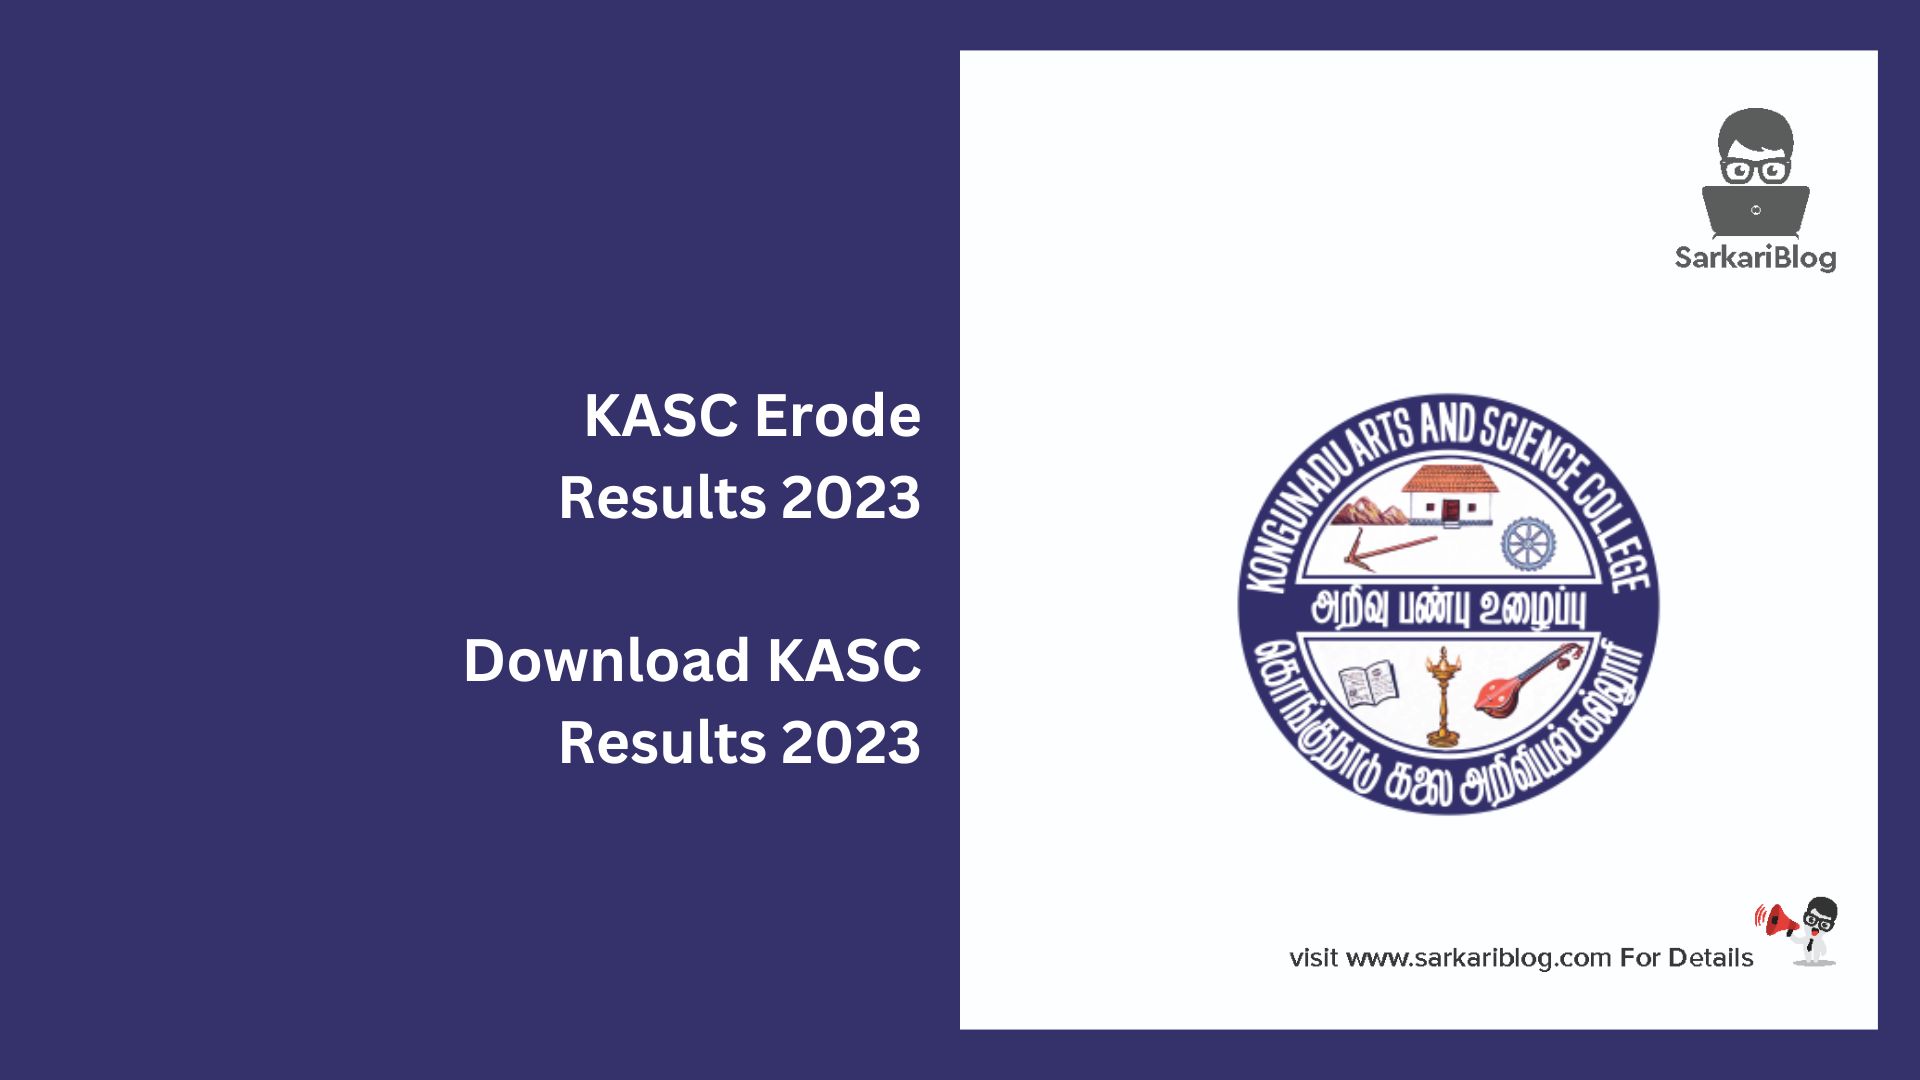 KASC Erode Results 2023